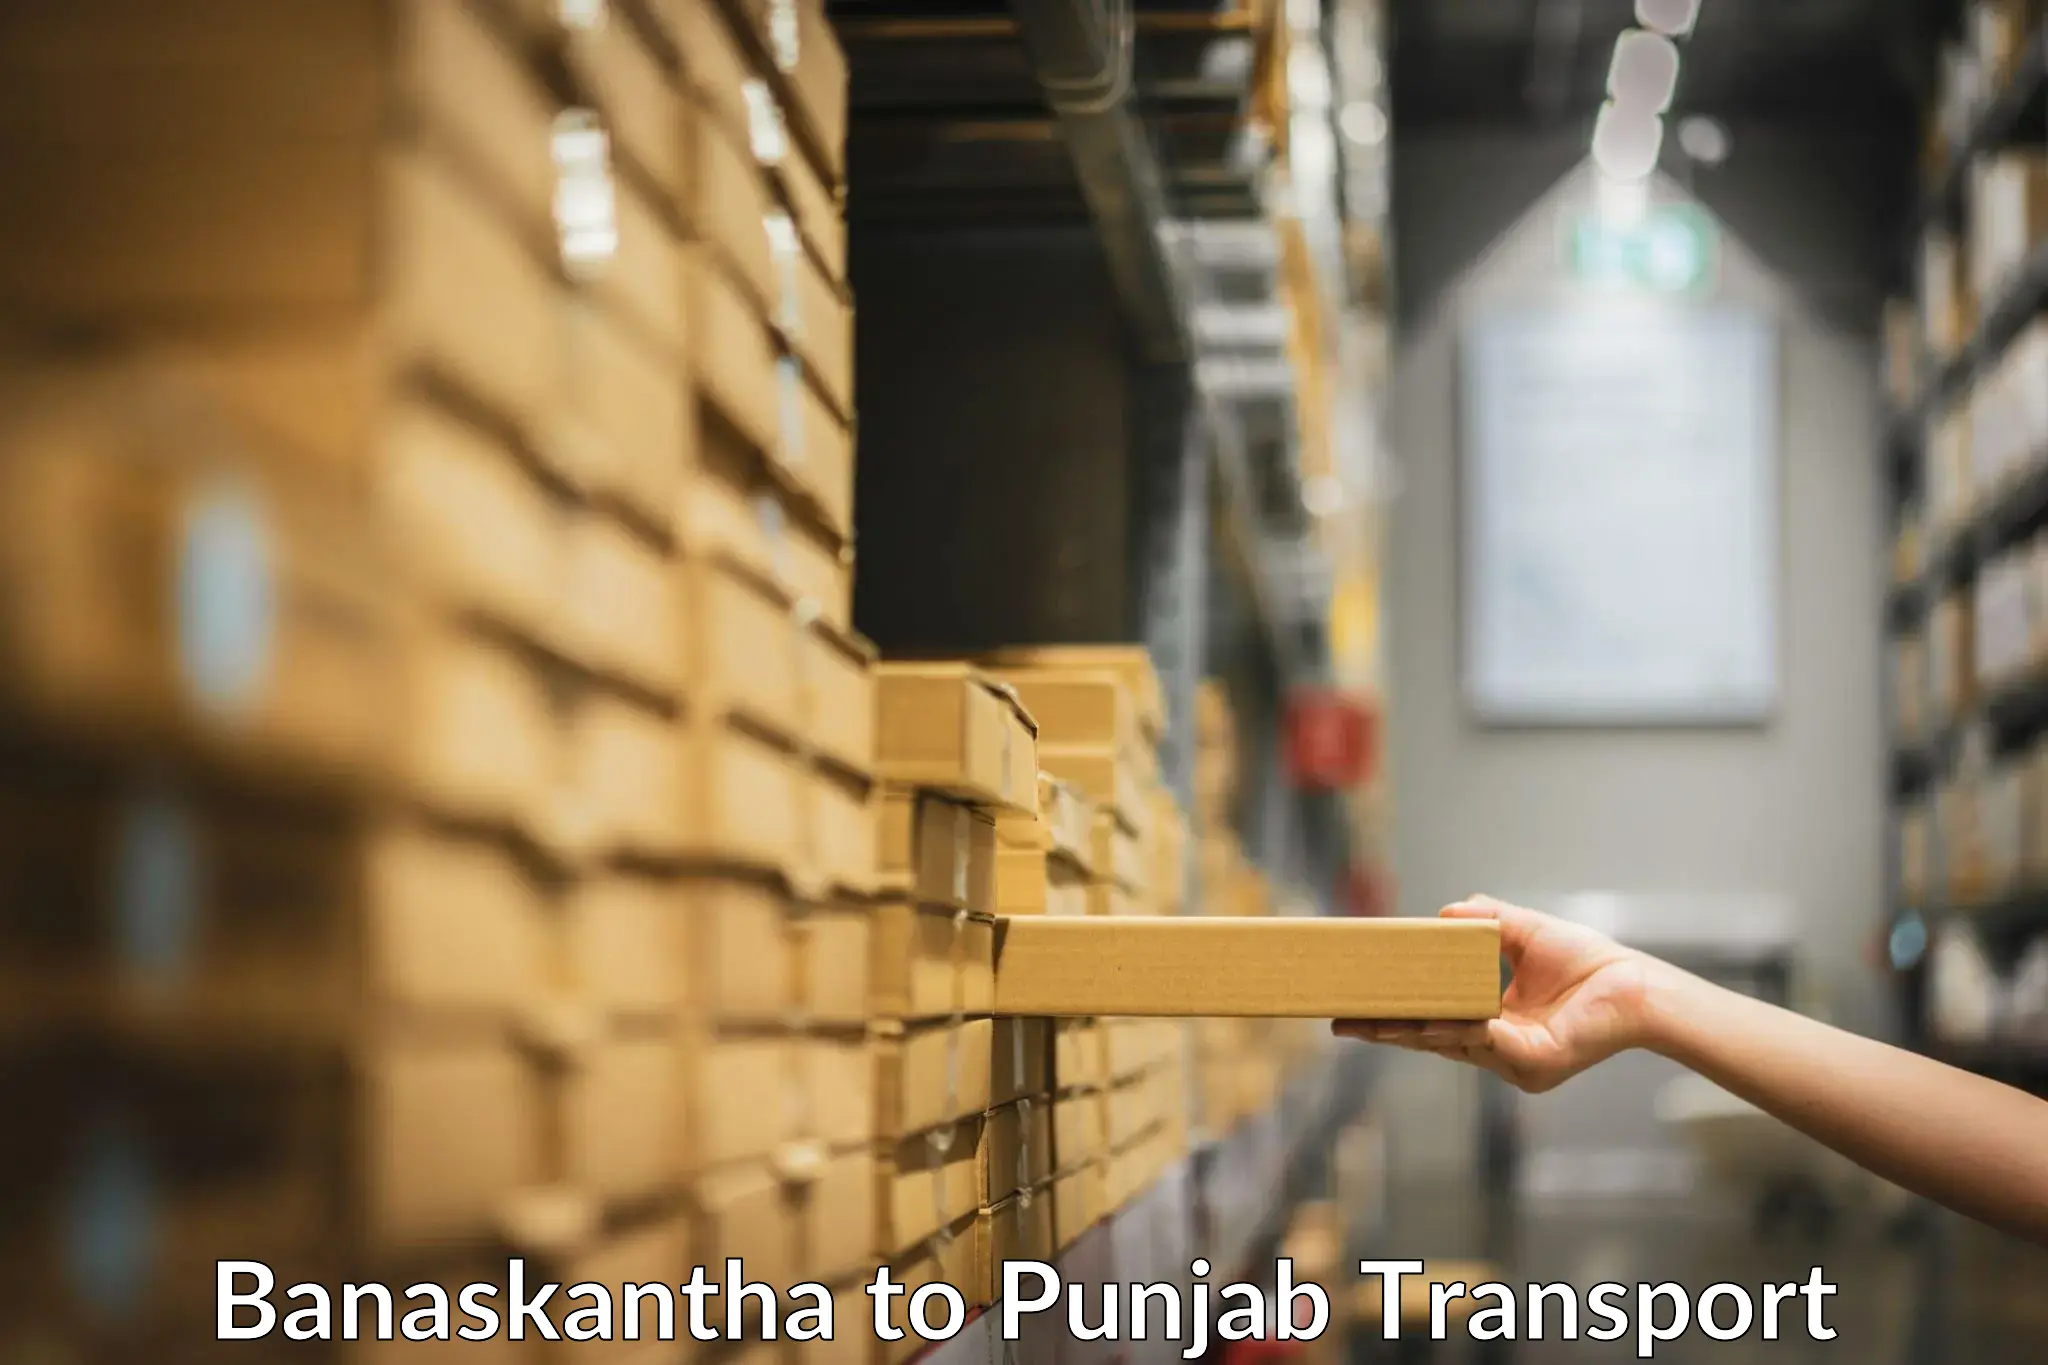 Road transport online services in Banaskantha to Punjab